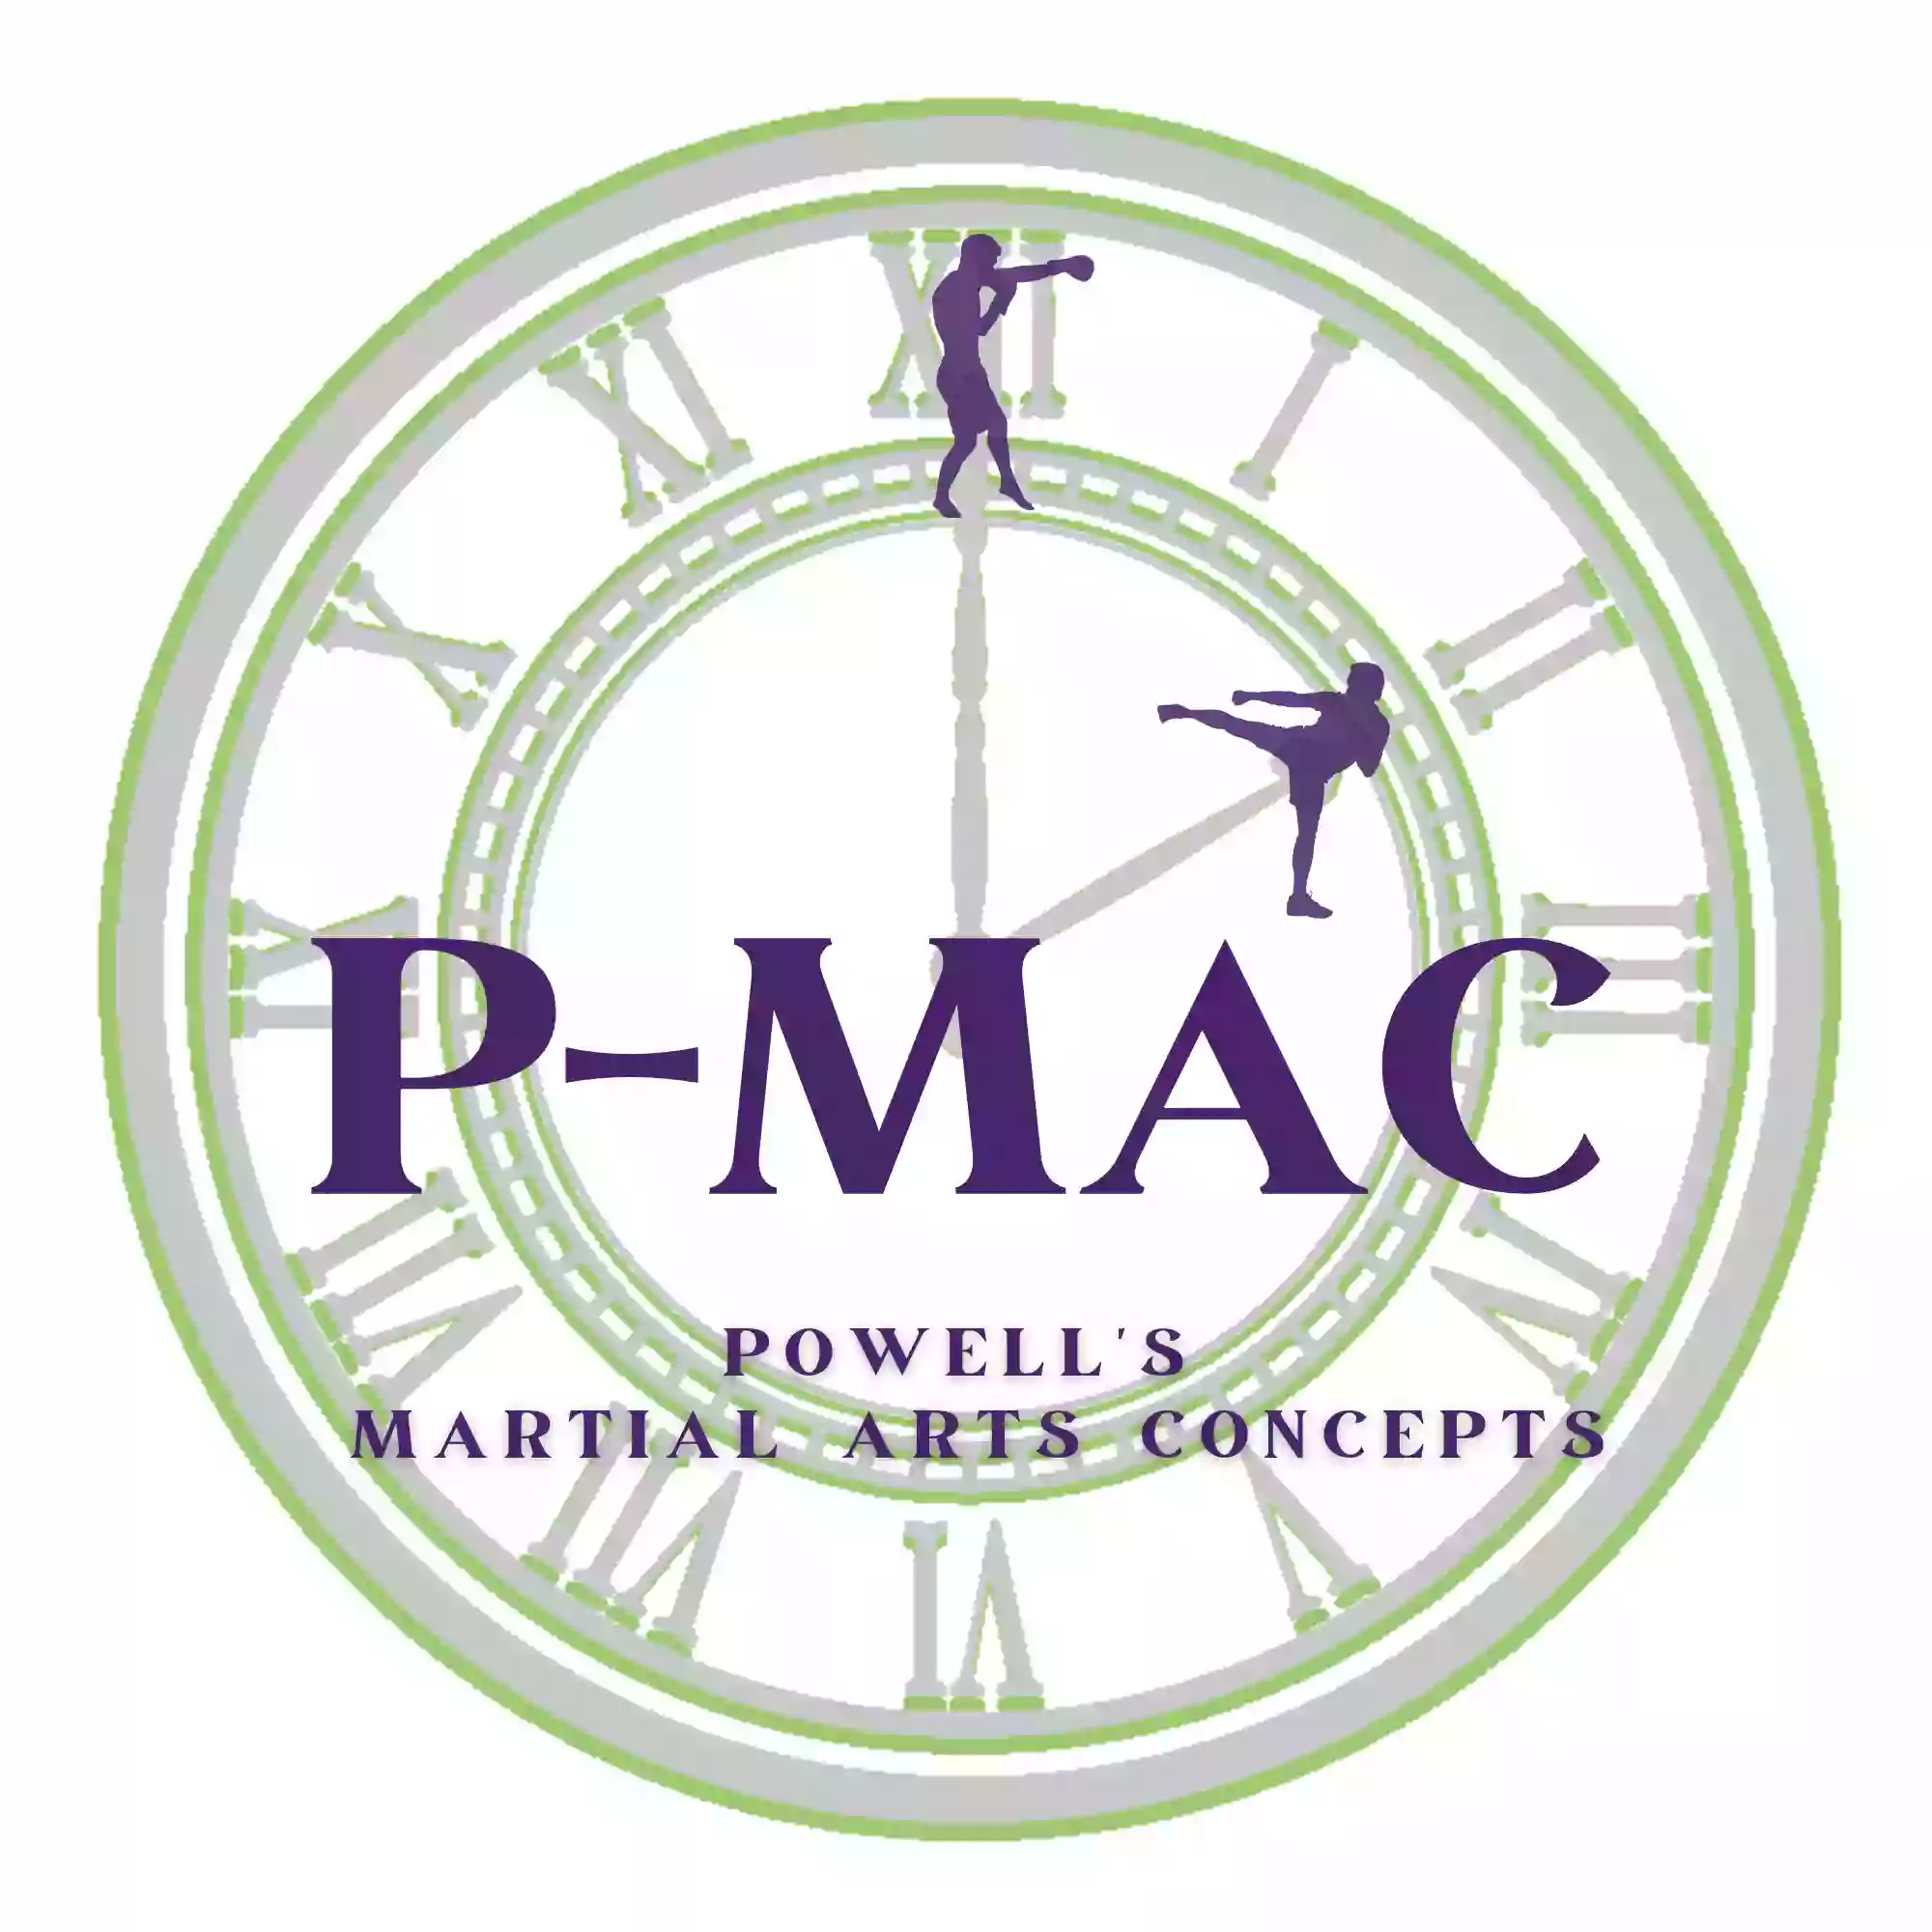 Powell's Martial Arts Concepts